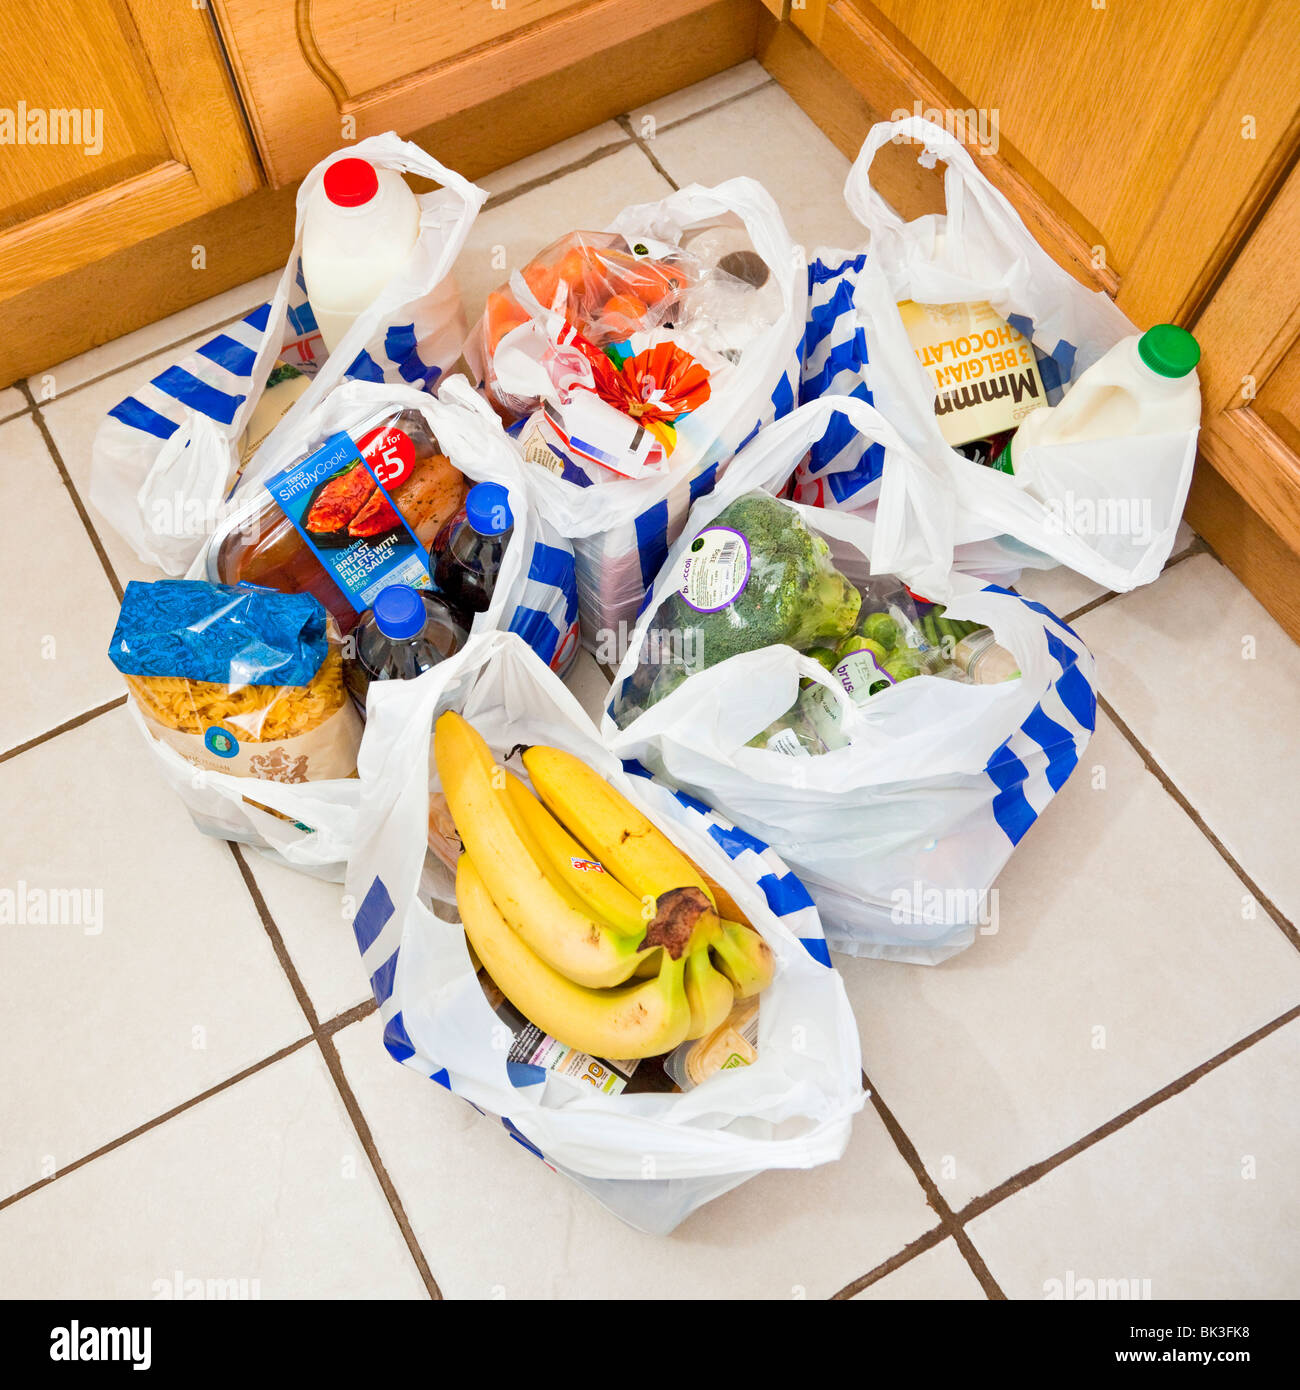 Bolsas de supermercado, bolsas, bolsas de compras en el piso de la cocina, Inglaterra, Reino Unido. Foto de stock